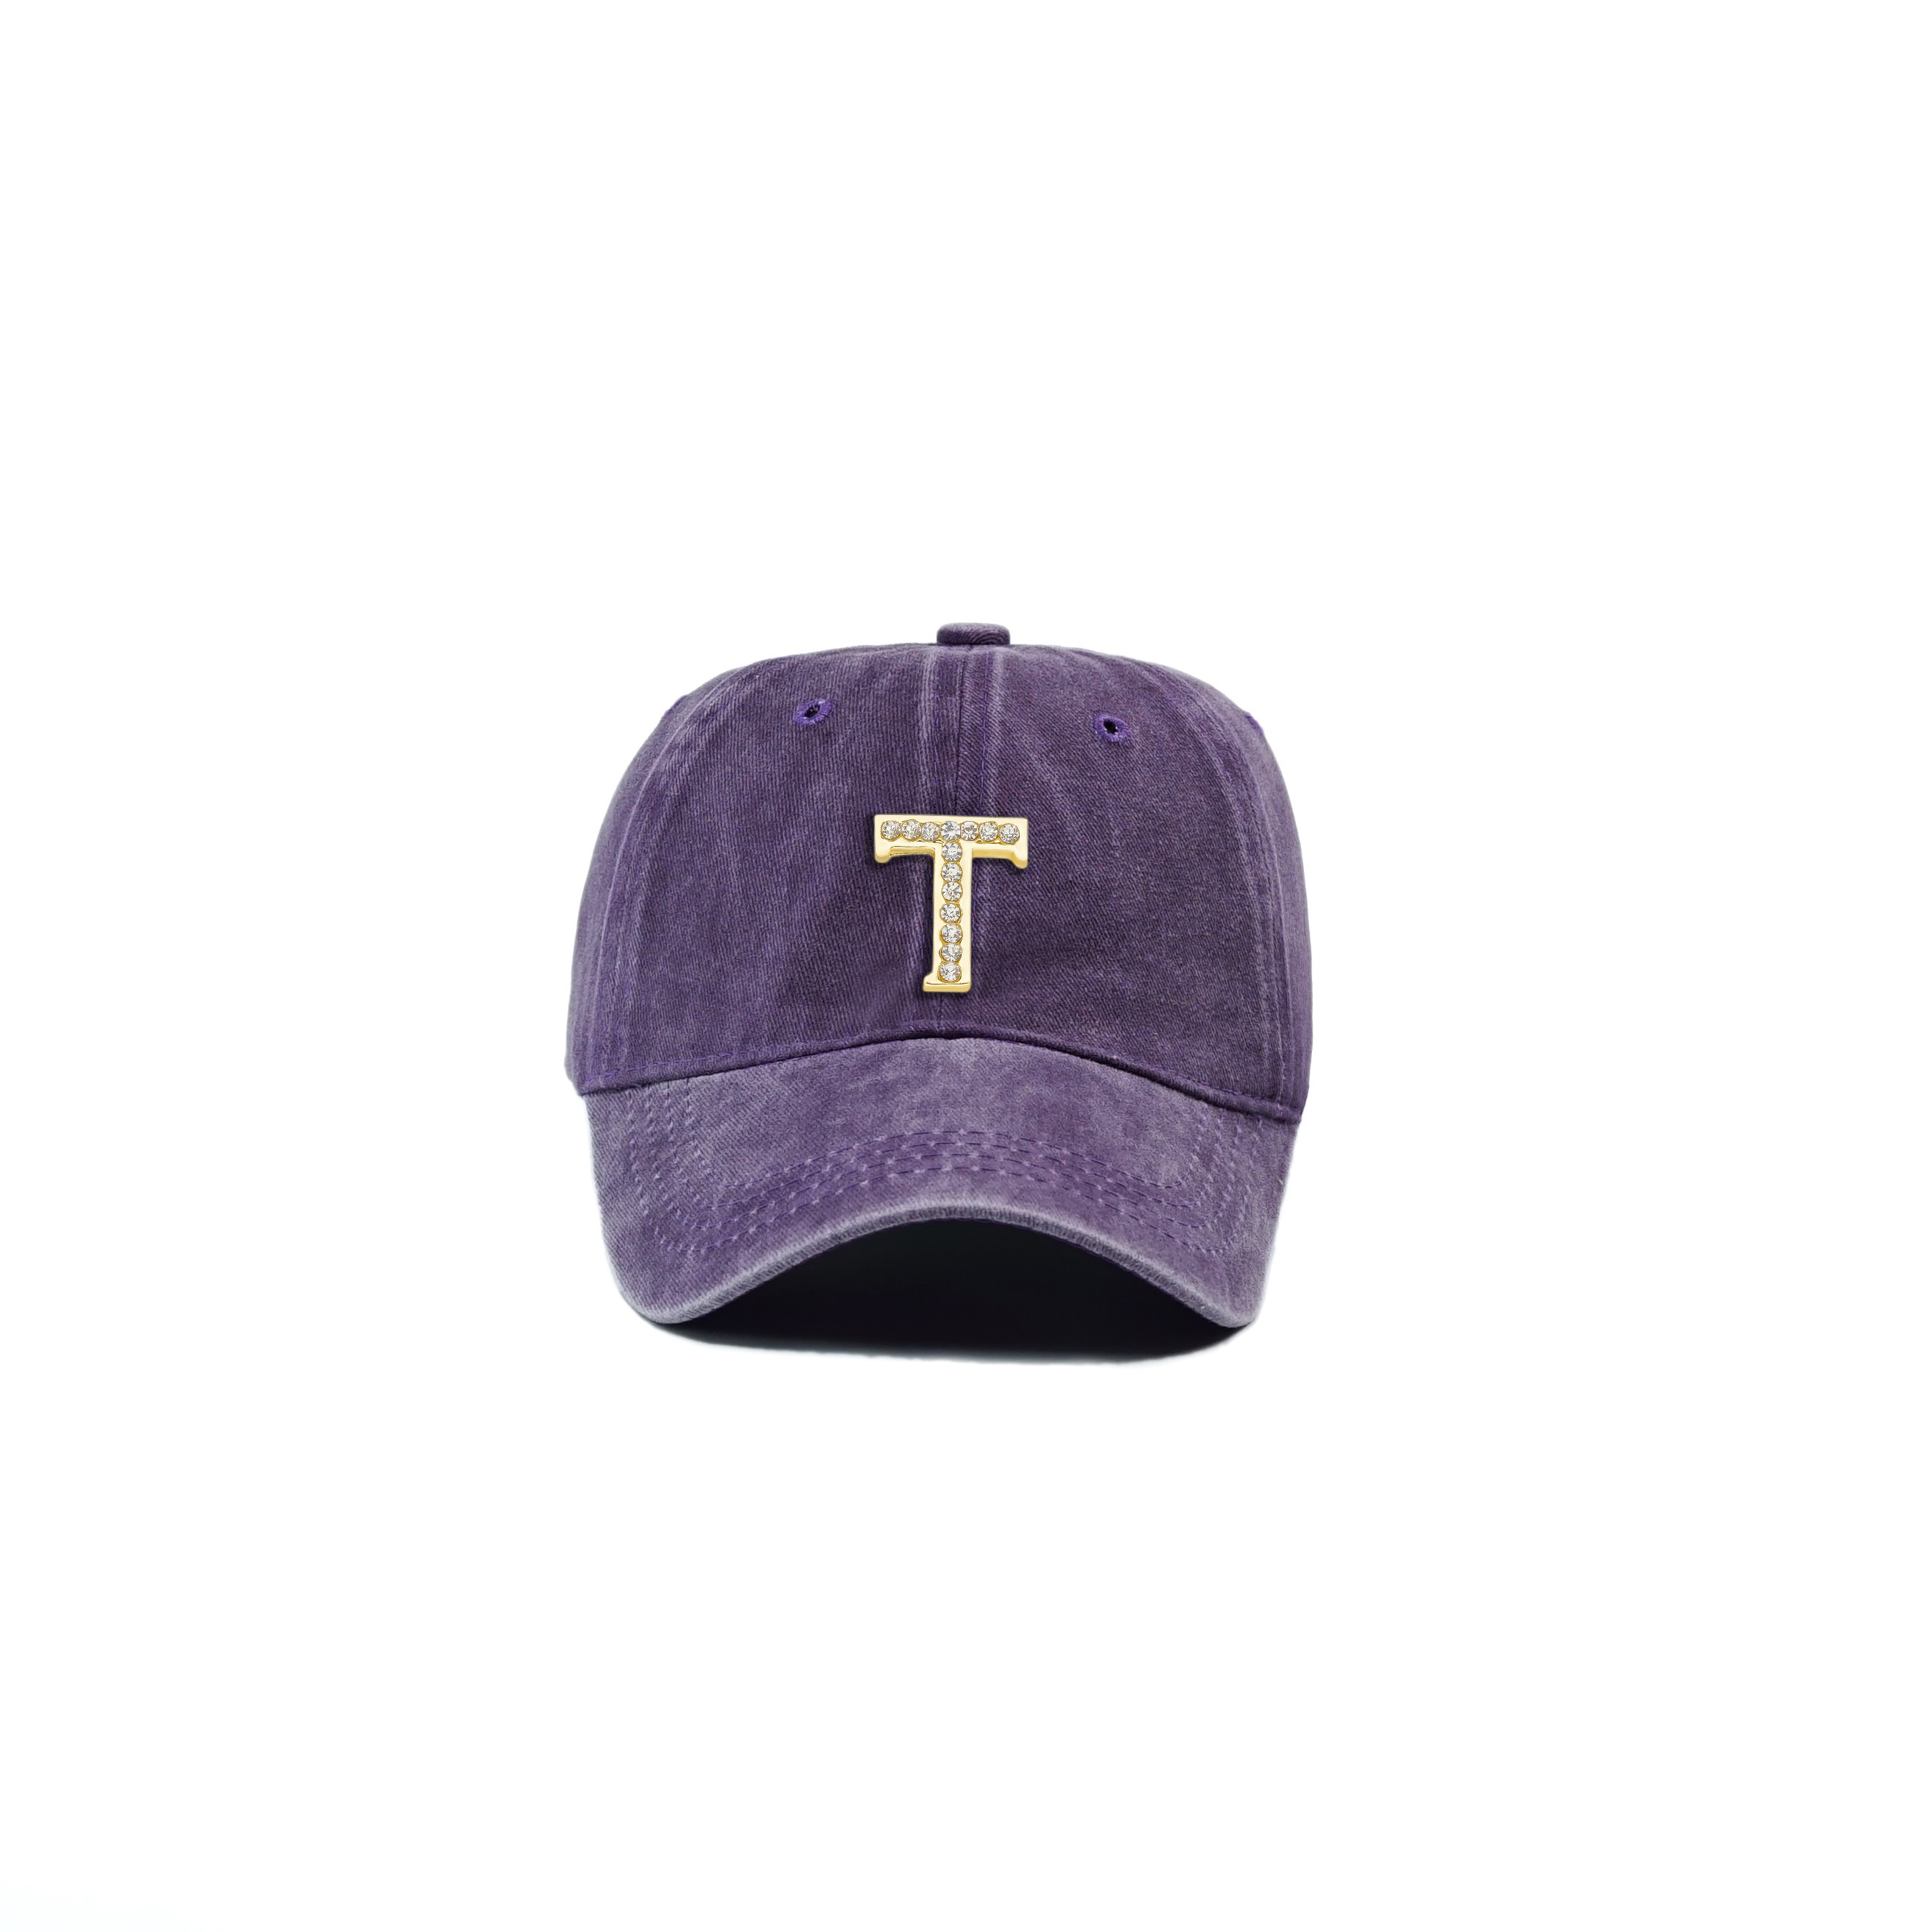 Twingold Kişiye Özel Yıkamalı Kep Şapka - Mor